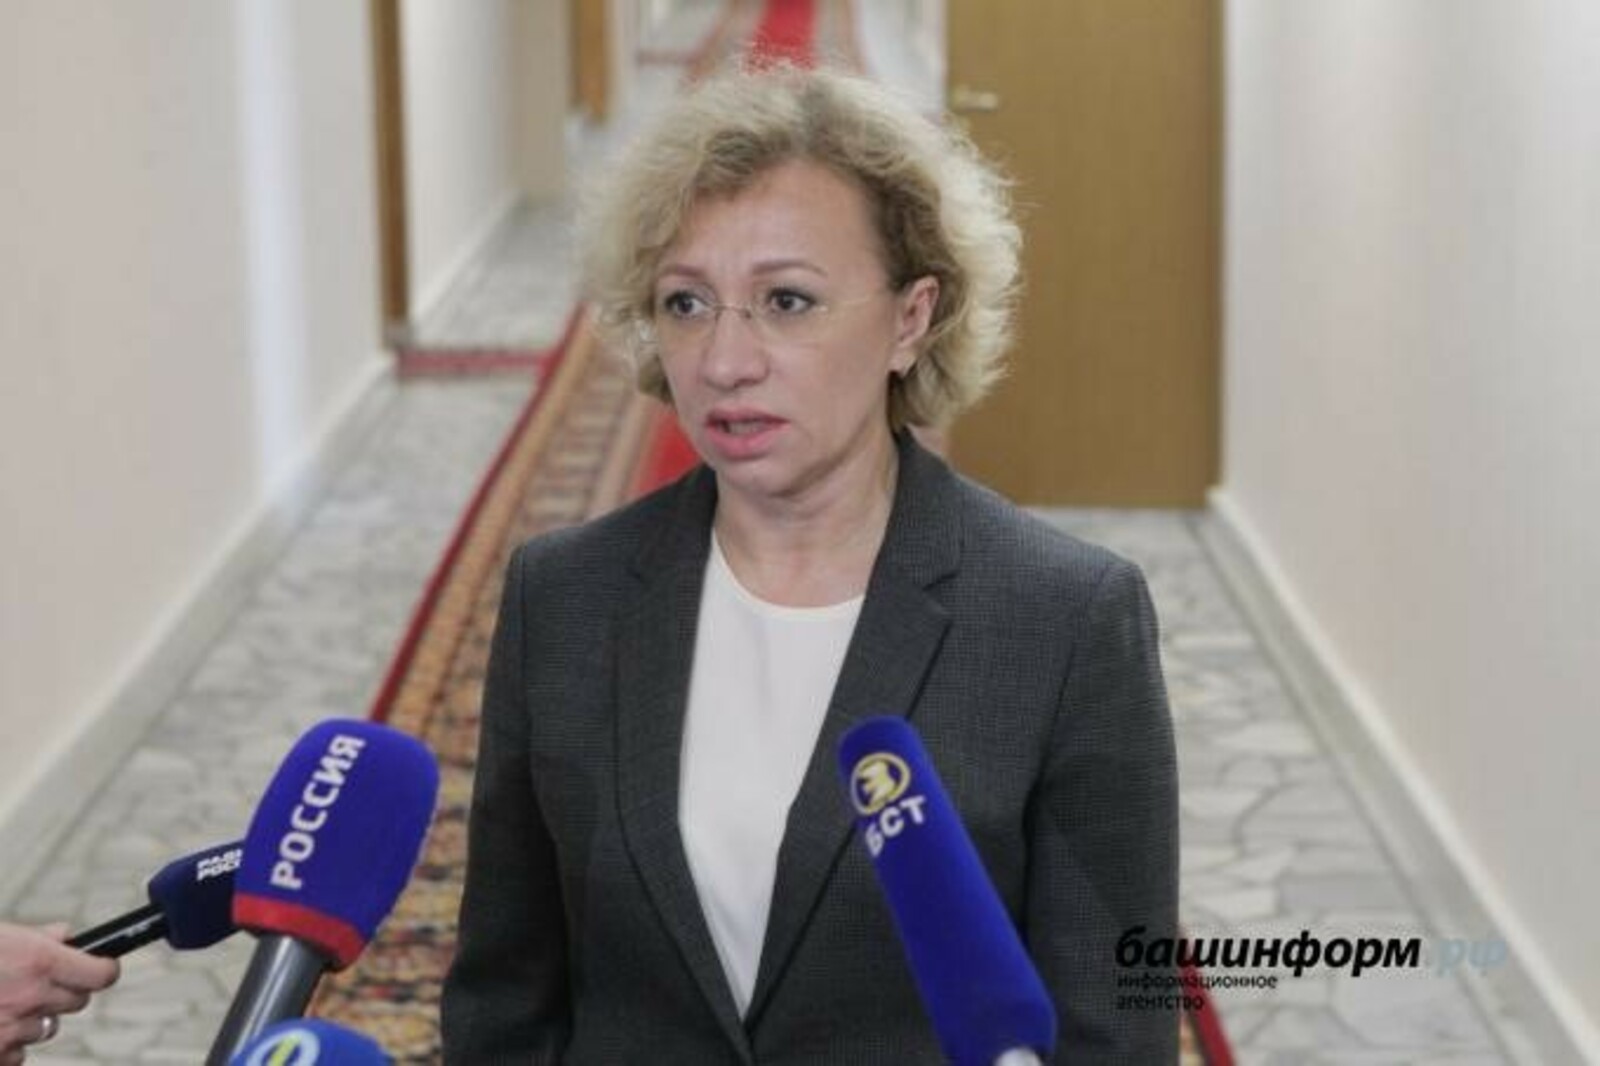 ЦИК Башкирии сообщил, что жалоб о серьезных нарушениях на выборах не поступало